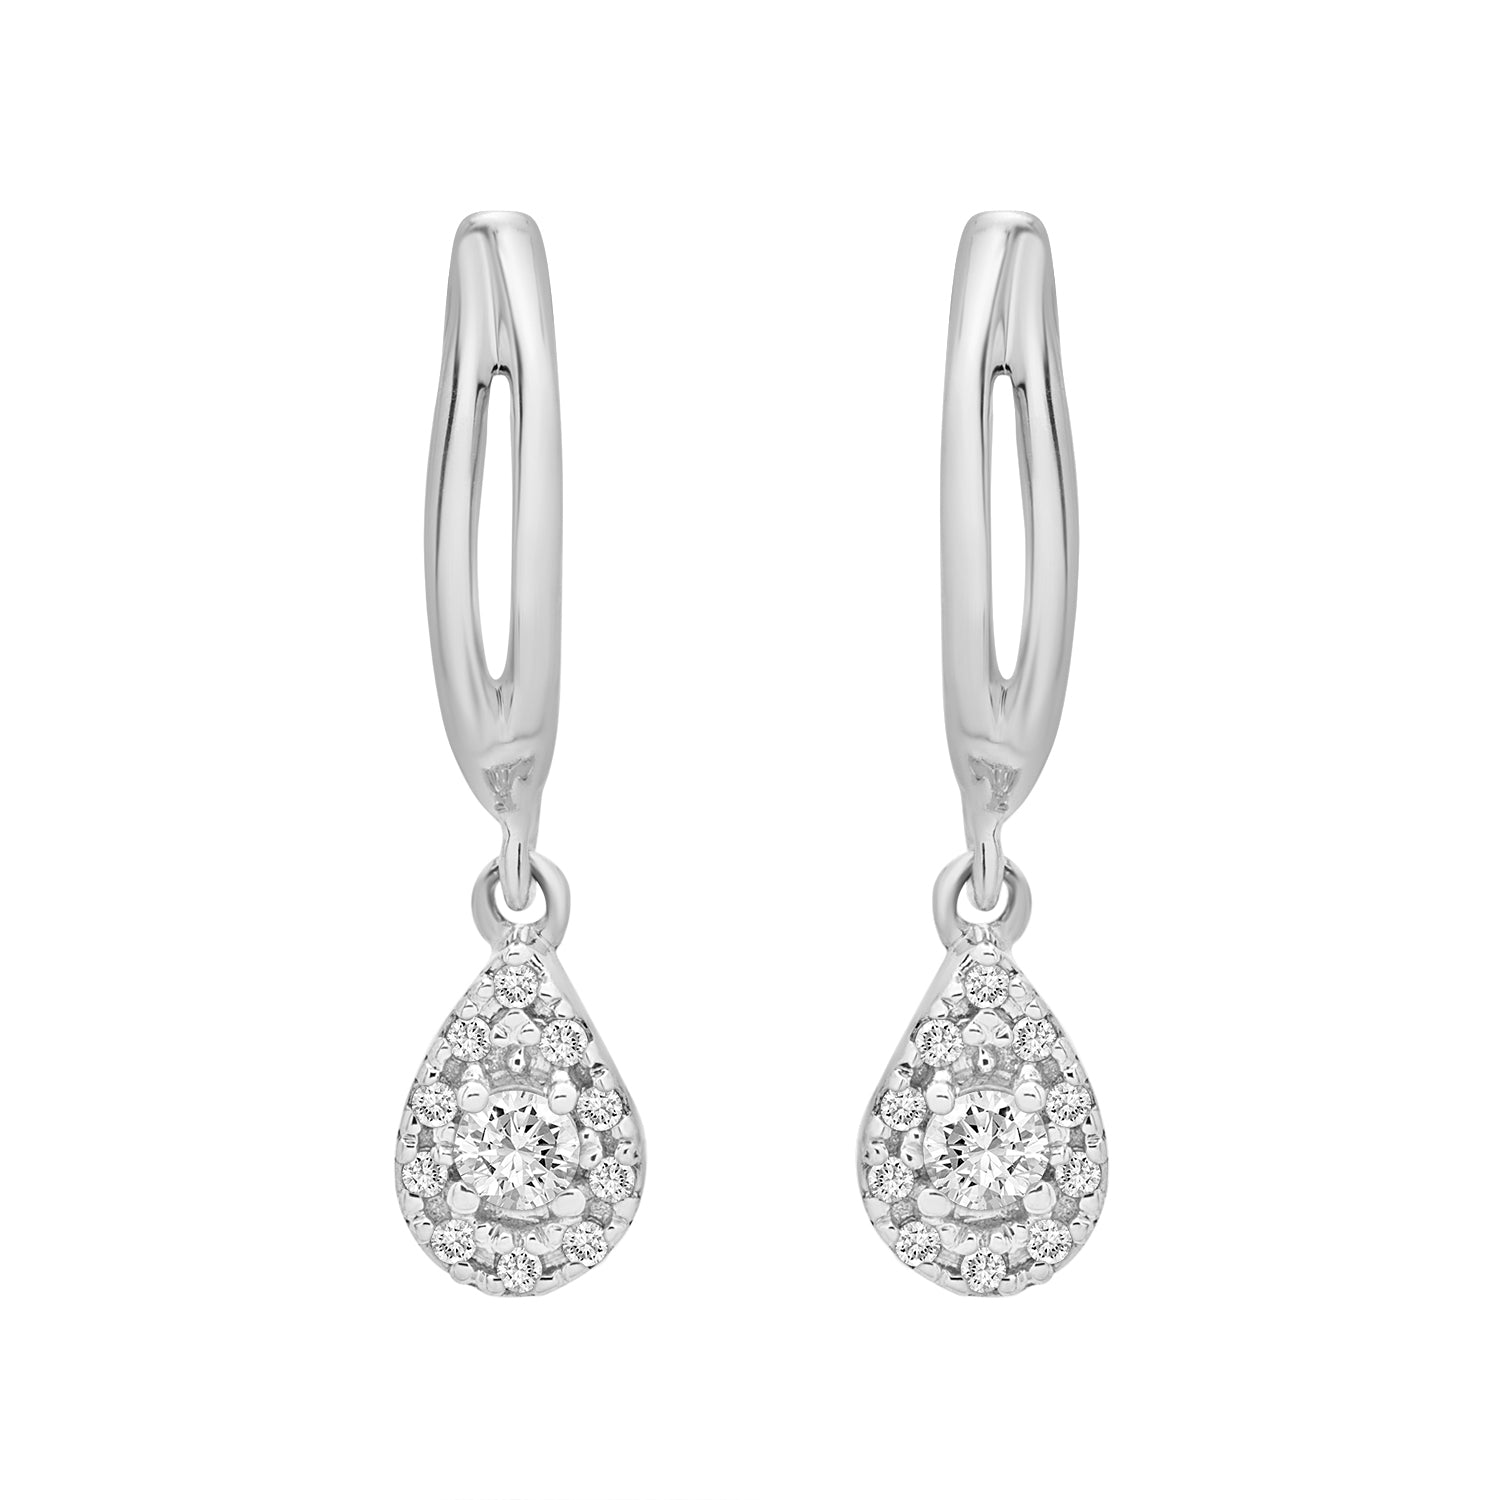 Edan Diamond Pear Dangle Earrings Placed In Silver